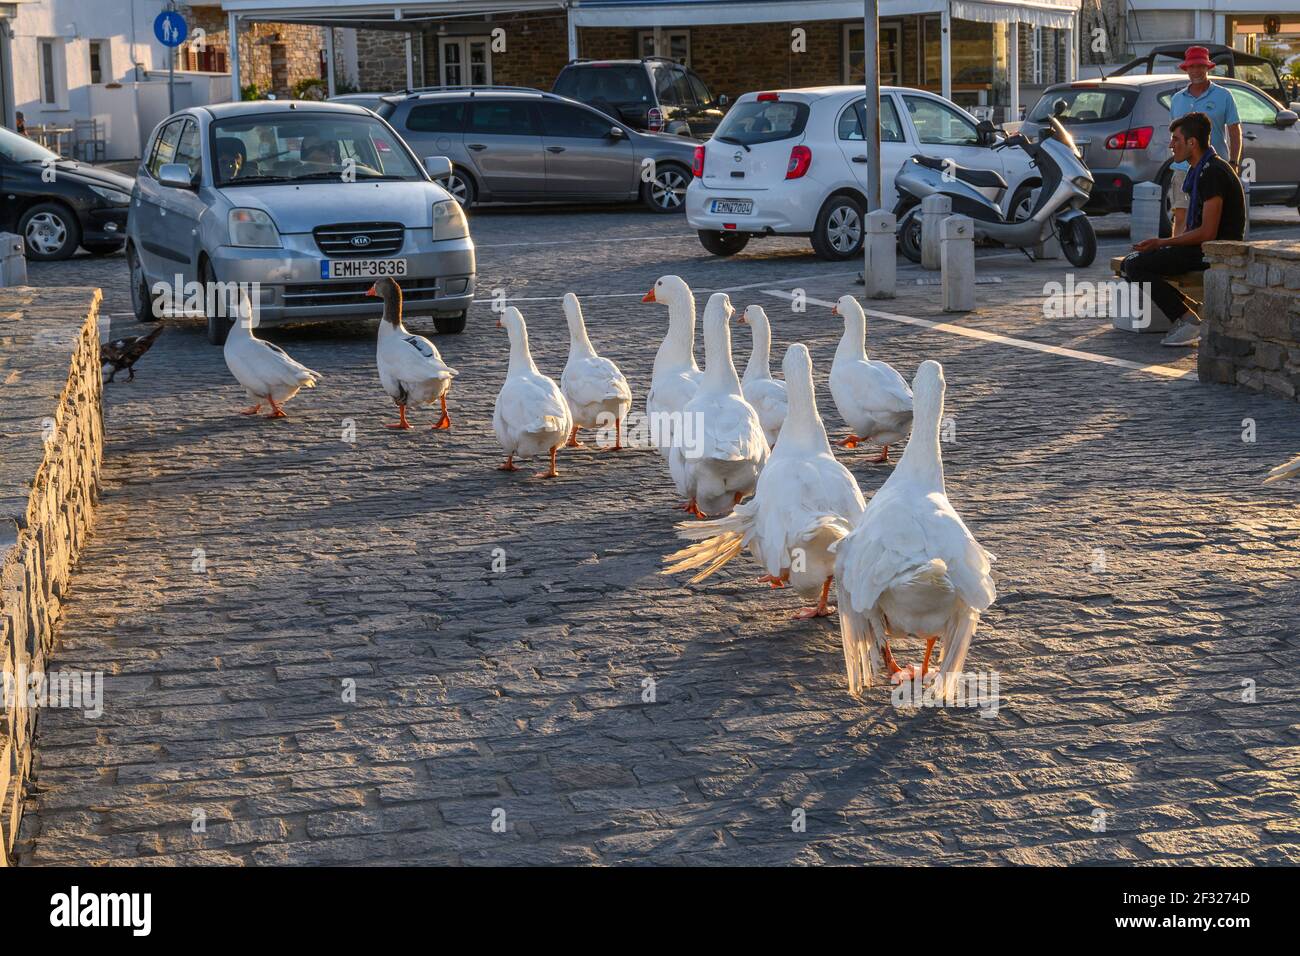 Paros, Greece - September 27, 2020: A gaggle of white geese on the street in Naoussa on Paros island, Greece Stock Photo